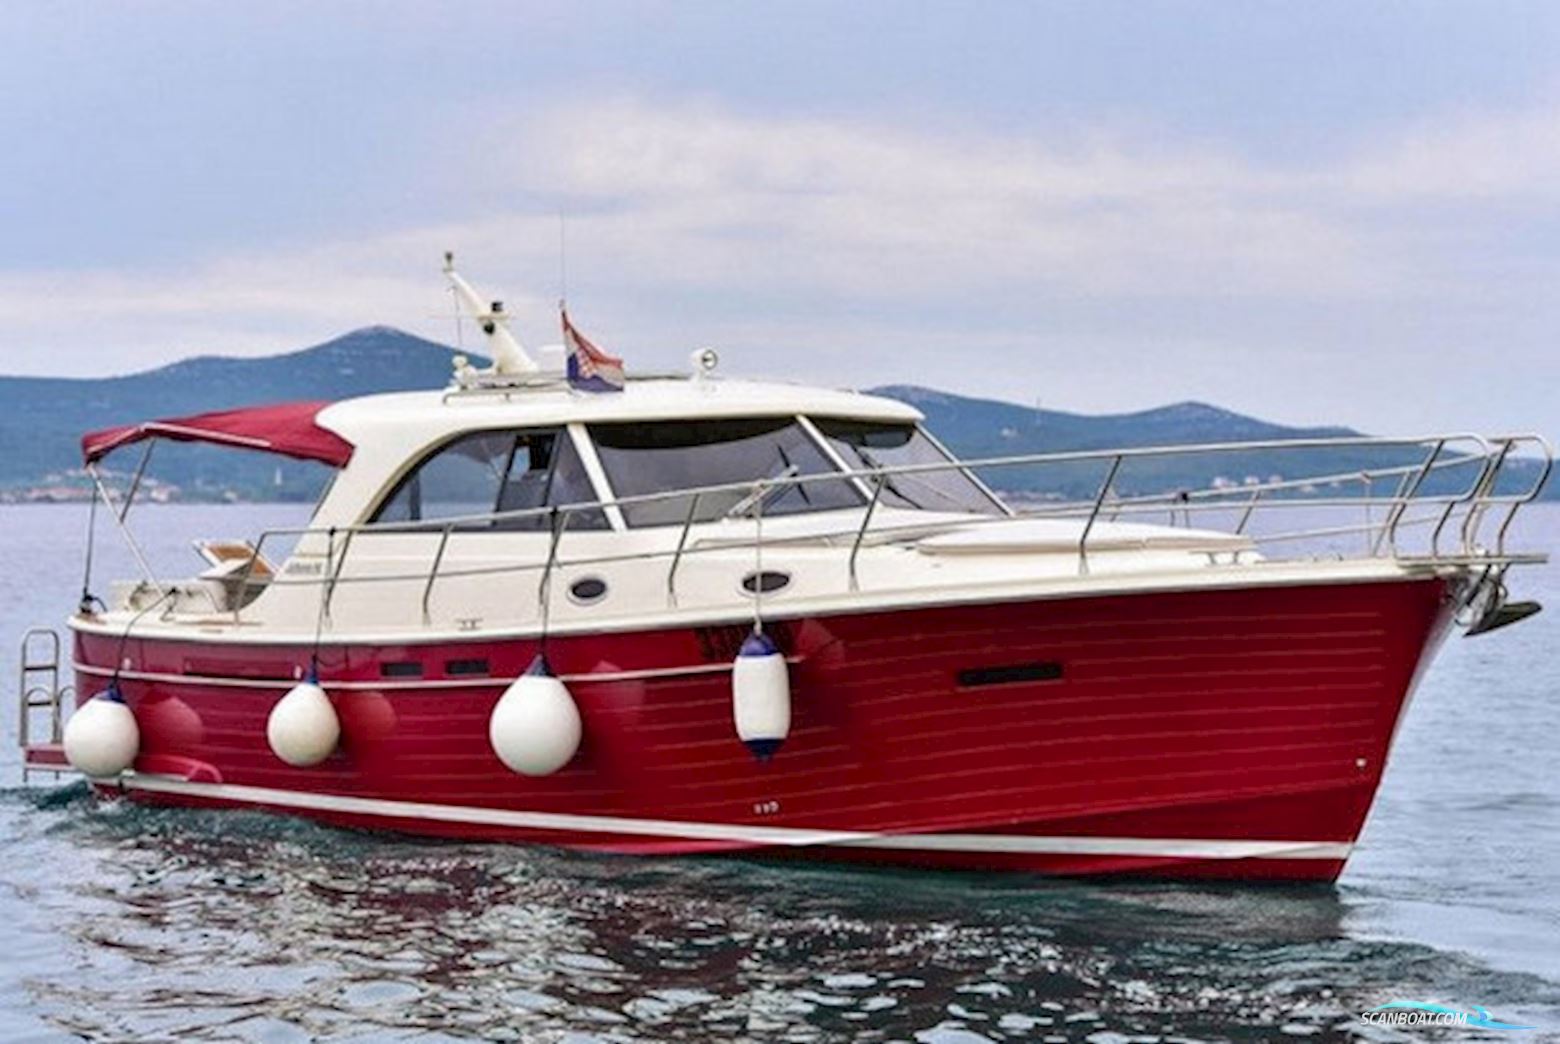 Sas Vektor Adriana 44 Motor boat 2010, with VM engine, Croatia